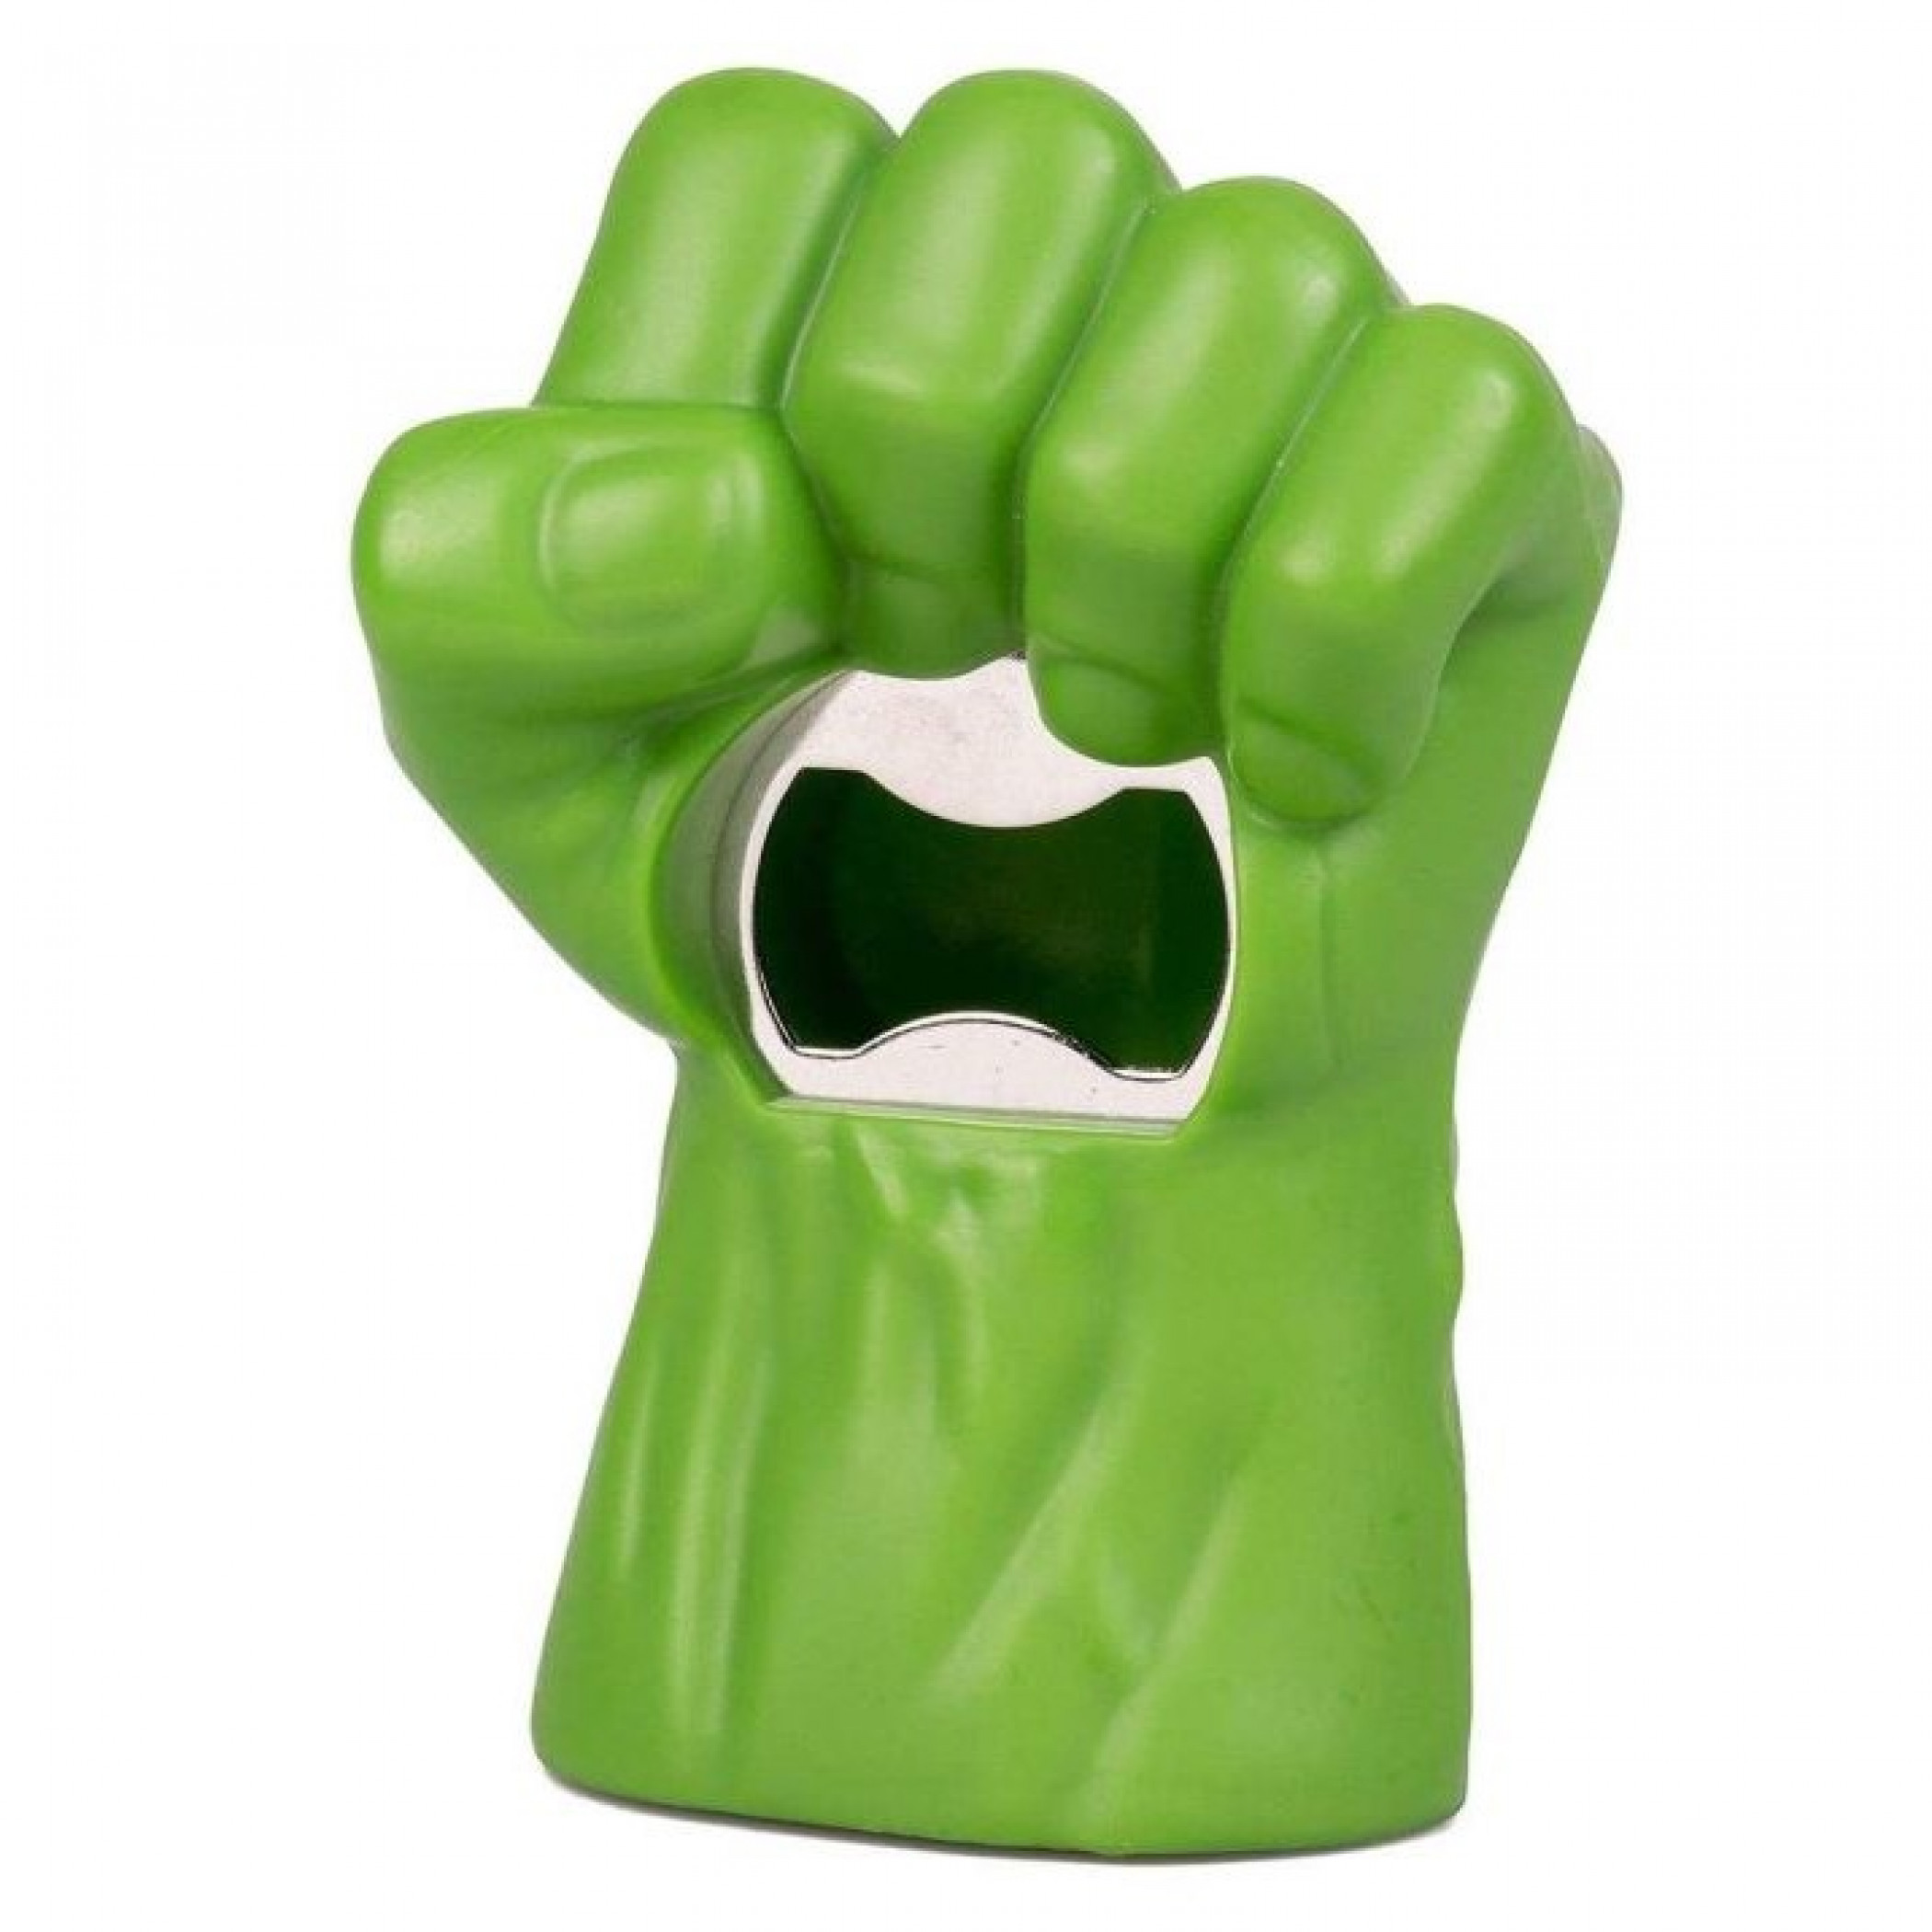 Marvel's the Incredible Hulk Fist Bottle Opener